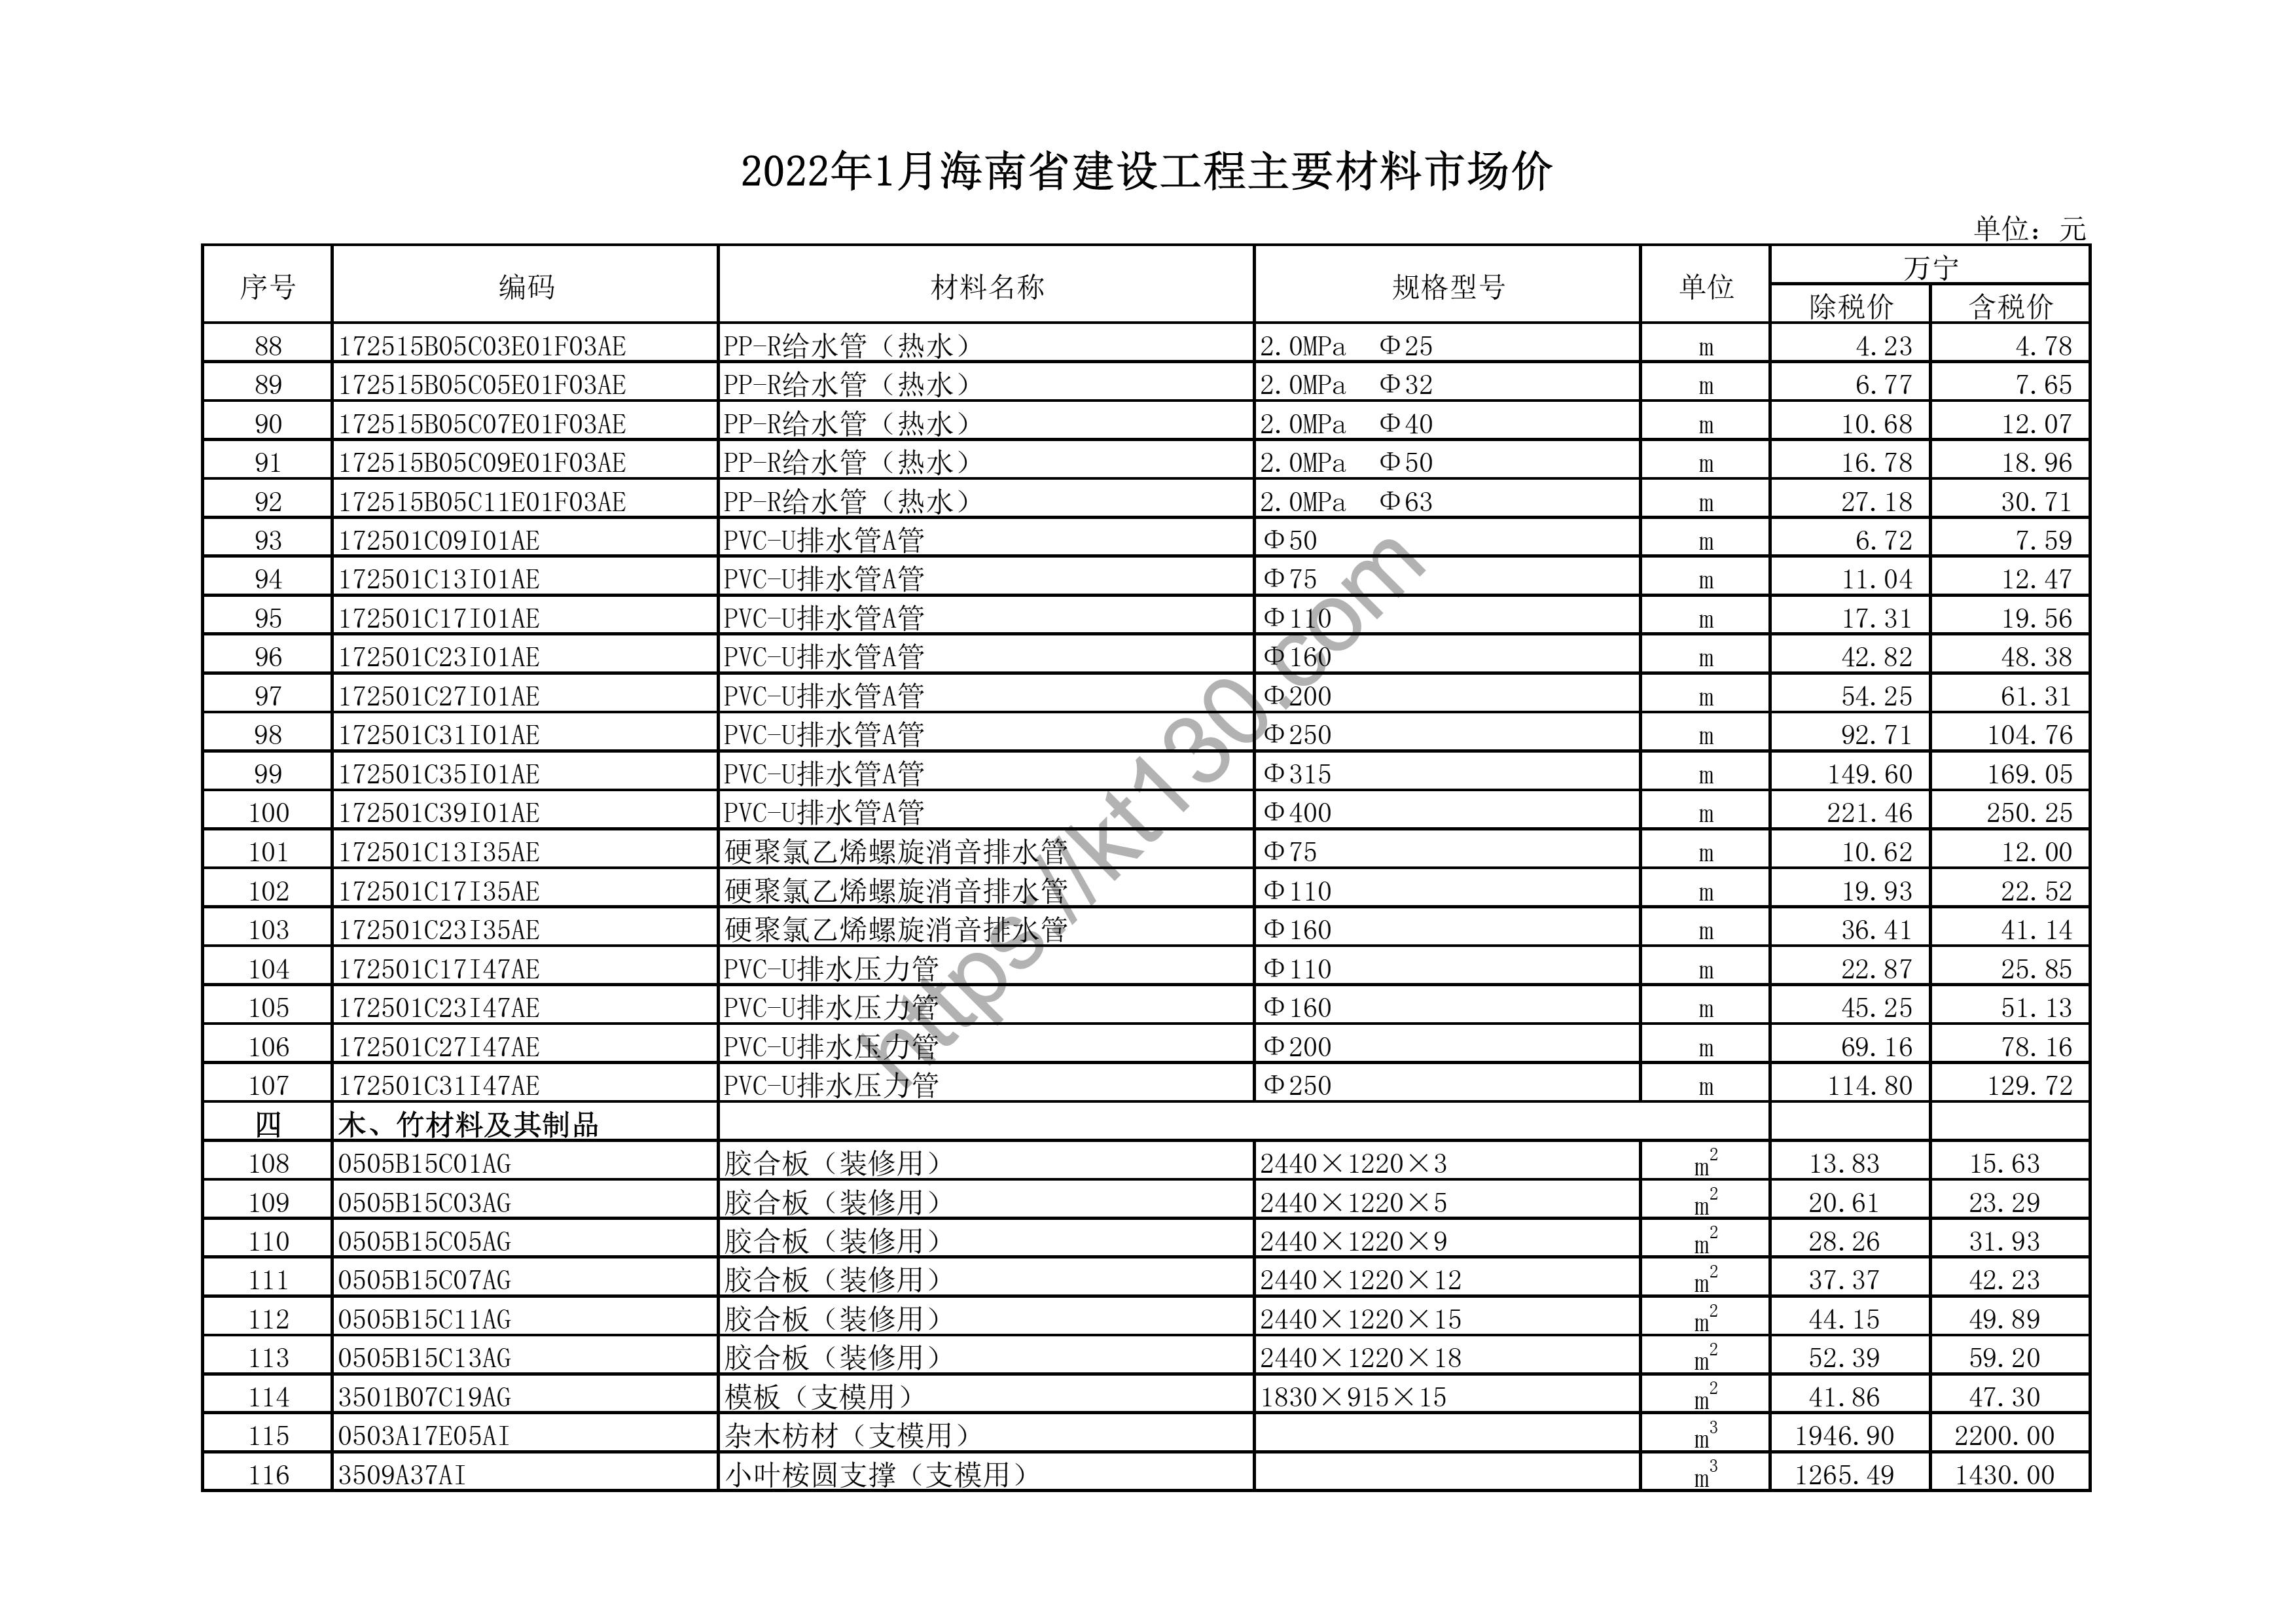 海南省2022年1月建筑材料价_PVC排水管_43659